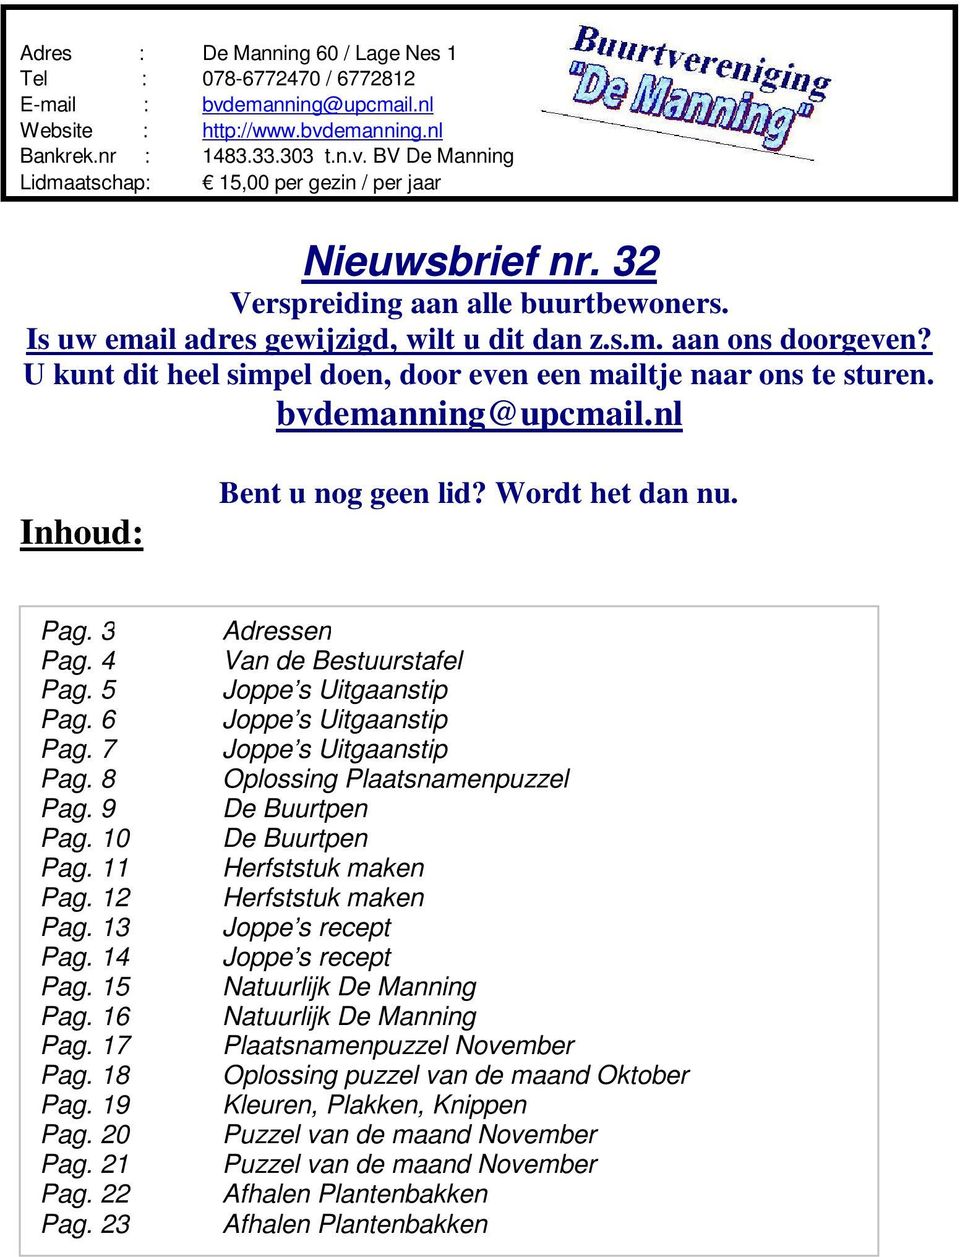 bvdemanning@upcmail.nl Inhoud: Bent u nog geen lid? Wordt het dan nu. Pag. 3 Pag. 4 Pag. 5 Pag. 6 Pag. 7 Pag. 8 Pag. 9 Pag. 10 Pag. 11 Pag. 12 Pag. 13 Pag. 14 Pag. 15 Pag. 16 Pag. 17 Pag. 18 Pag.